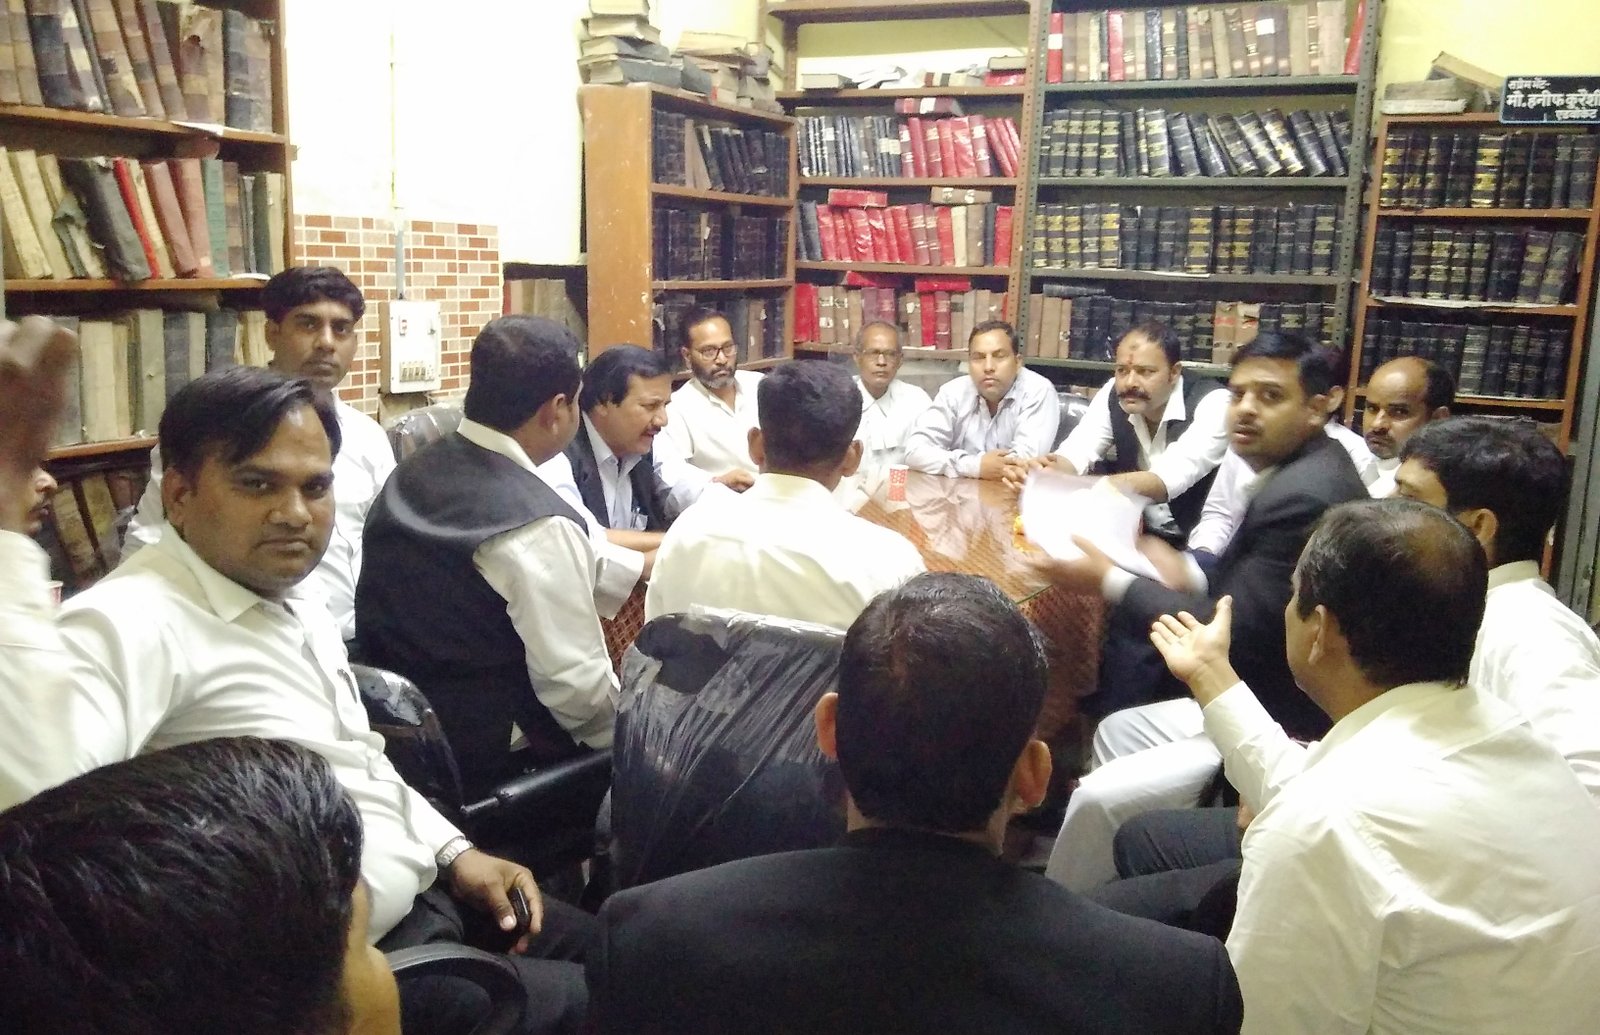 अलीगढ : साथी पर मुकद्दमा लिखाने से तिलमिलाए अधिवक्ता, जताया आक्रोश